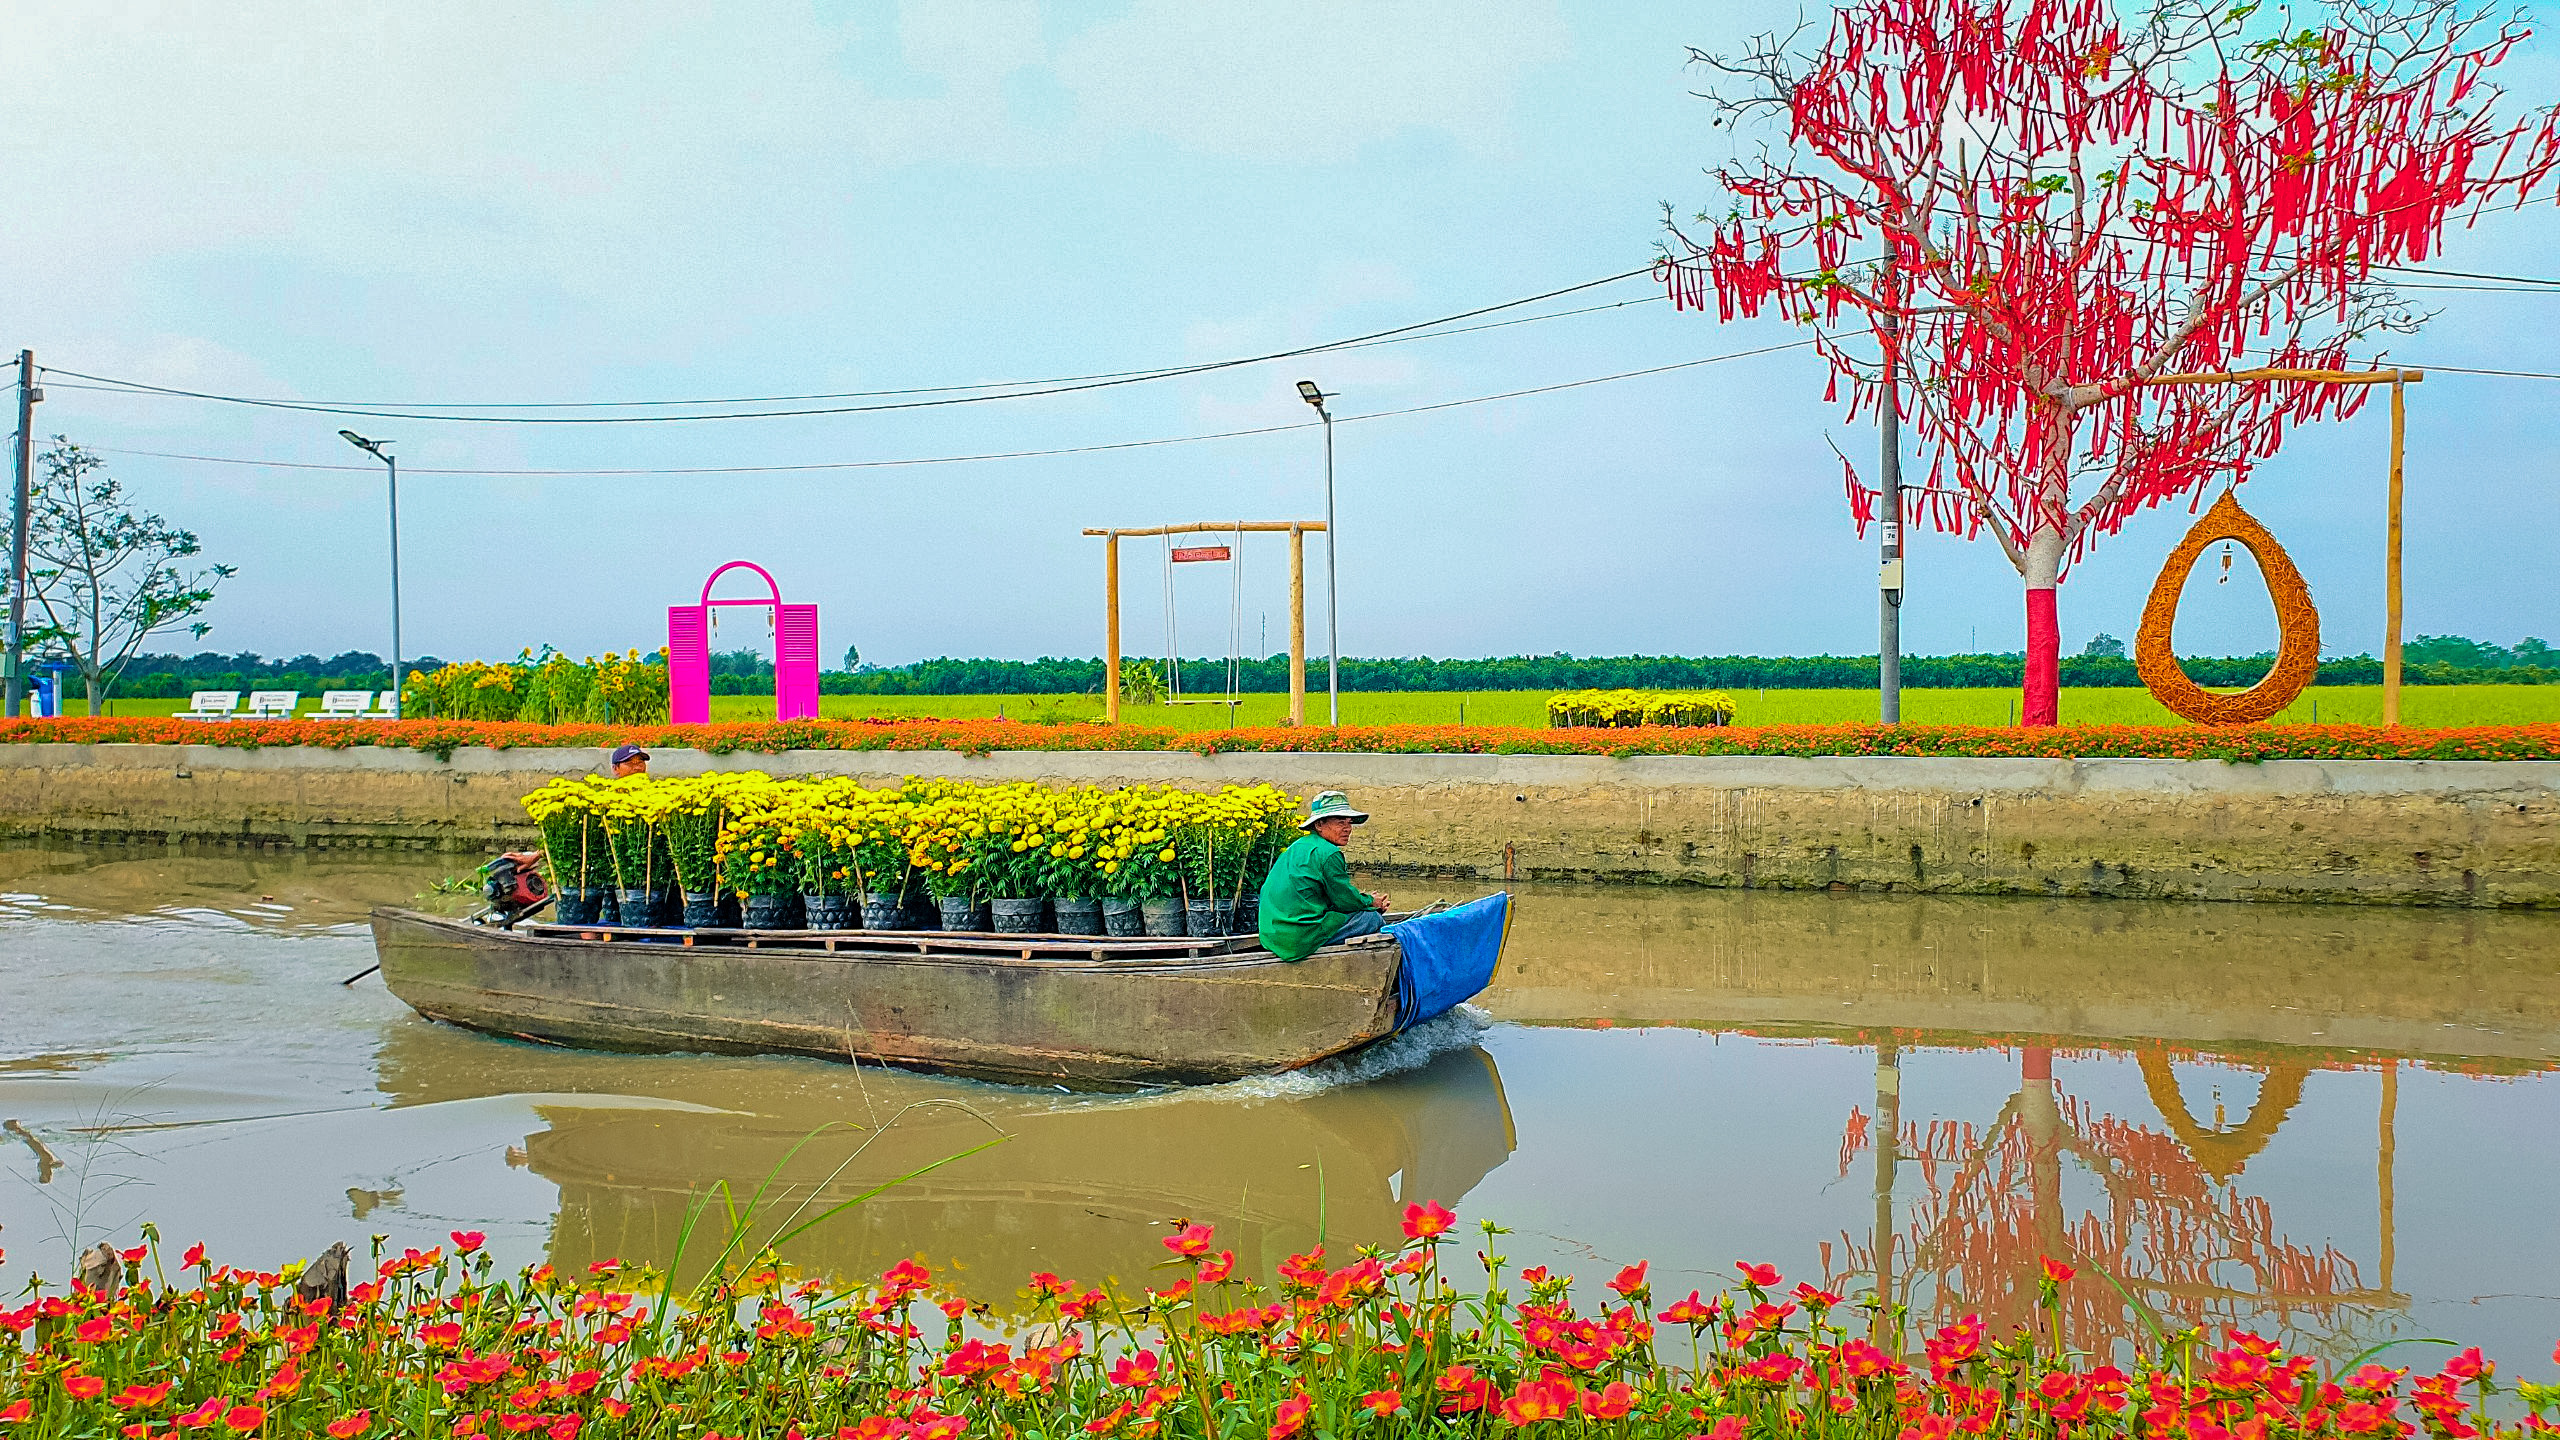 Ghe xuồng: Hình ảnh ghe xuồng đưa ta đến với một nét văn hóa truyền thống đầy ấn tượng của người Việt. Những hình ảnh cùng âm nhạc đặc sắc của câu lạc bộ ghe xuồng sẽ đưa bạn đến với một cuộc phiêu lưu trên dòng sông yên bình.